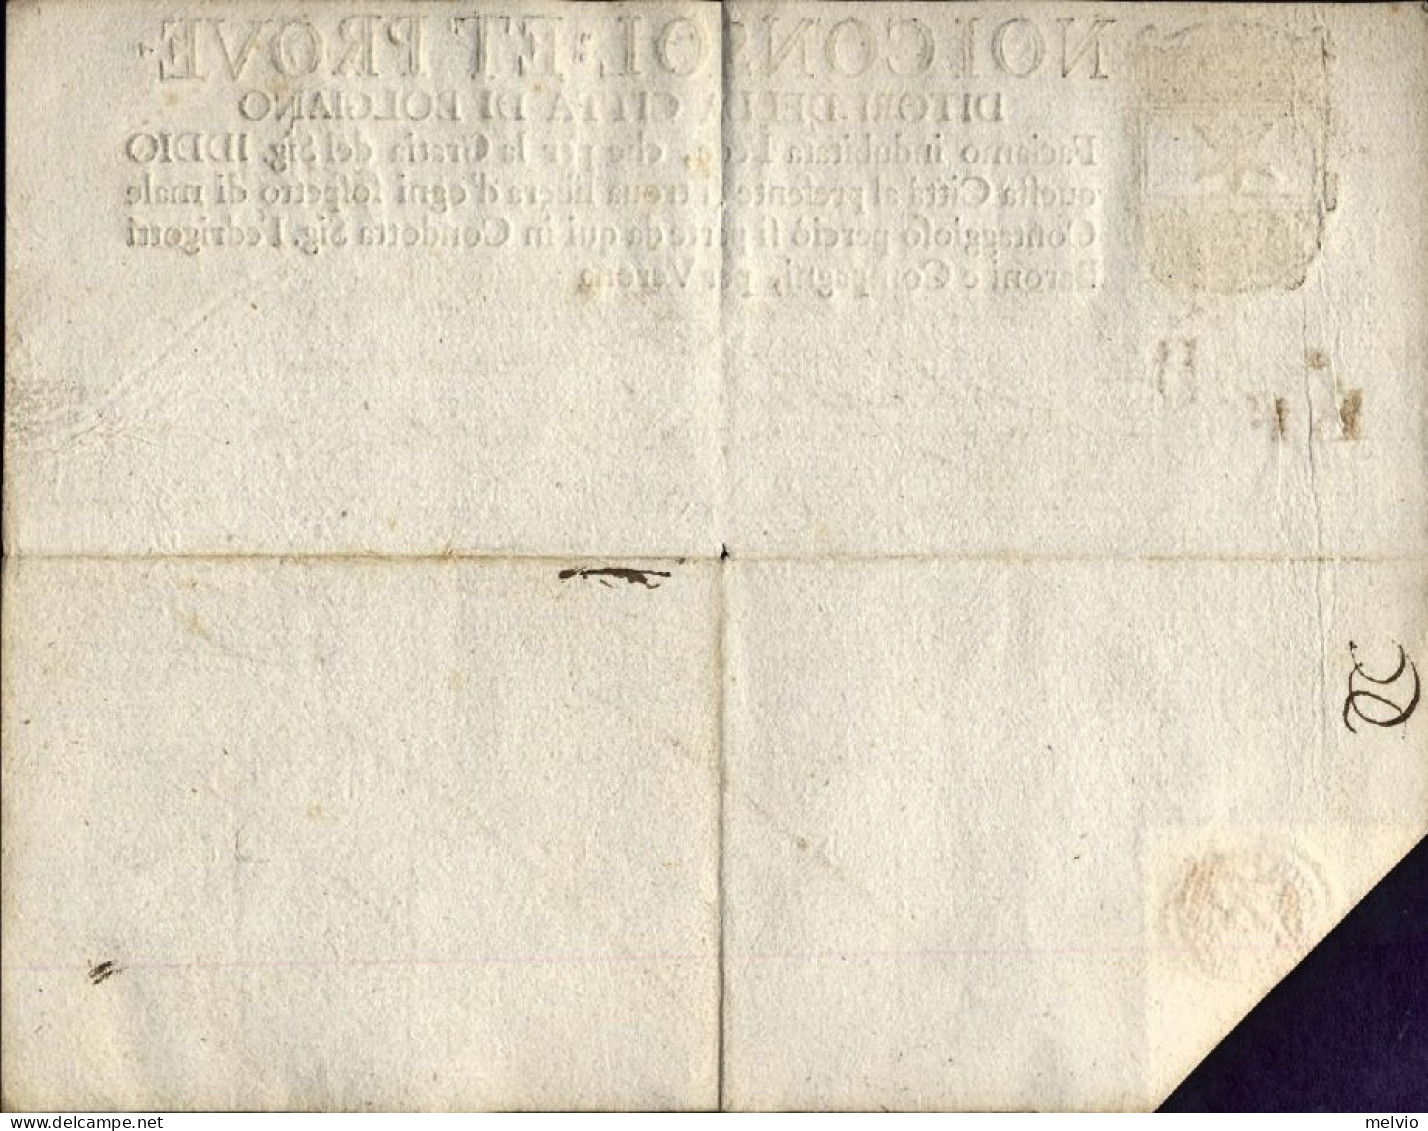 1777-Bolgiano Fede Di Sanita Con Timbro A Secco In Parte Stampata Ed In Parte Sc - Historische Documenten